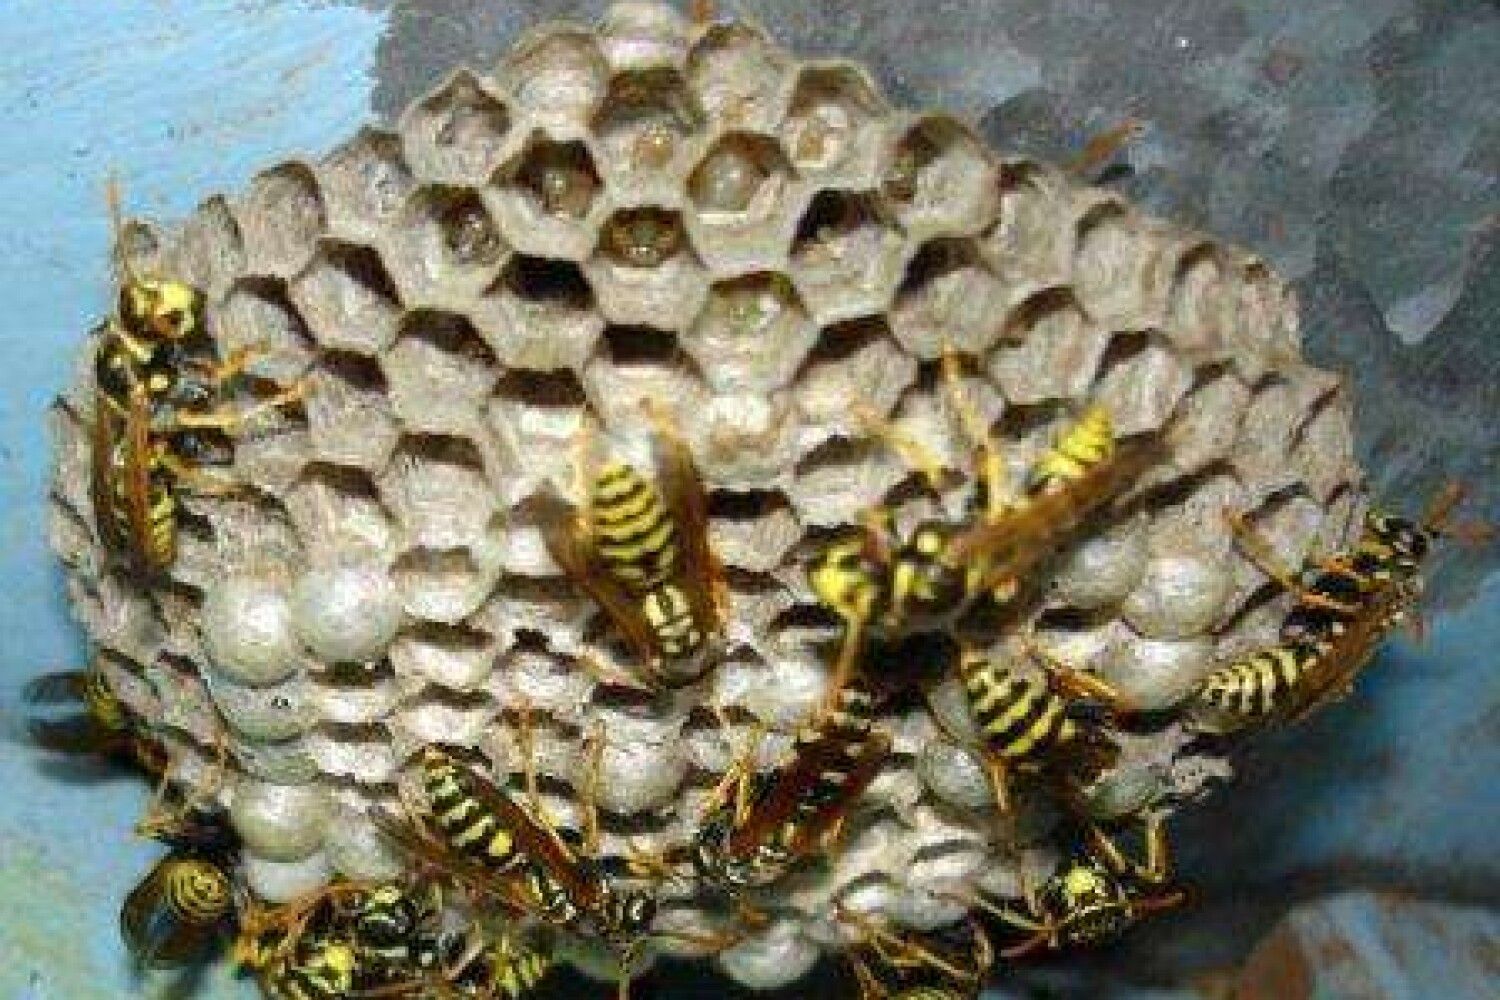 Осиное гнездо и пчелиное гнездо